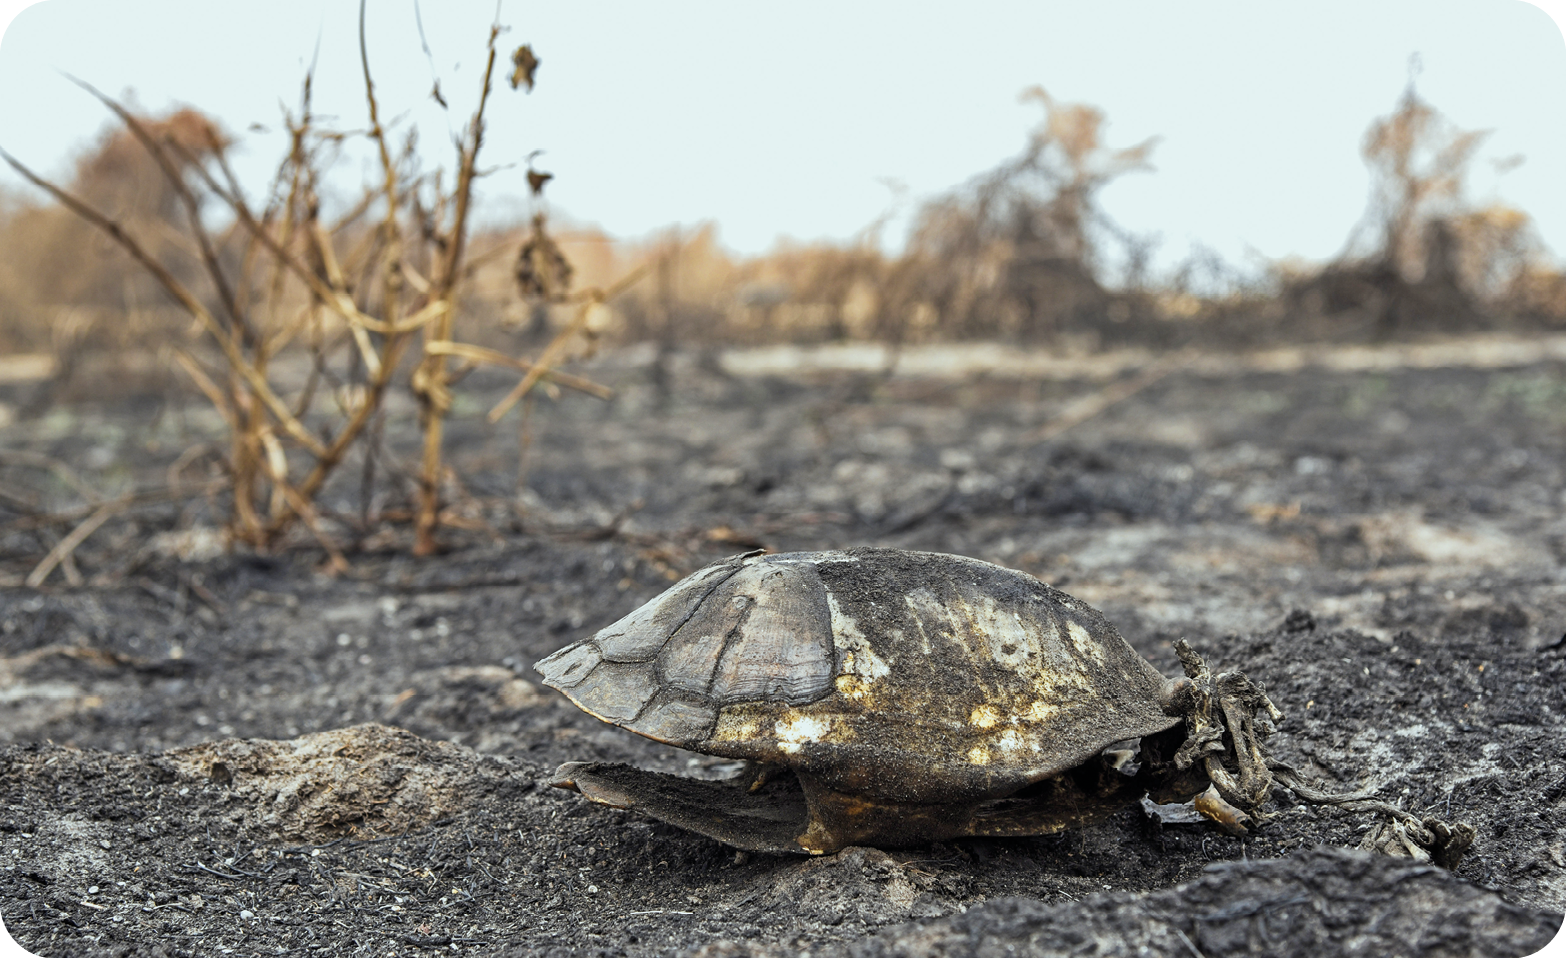 Fotografia. Destaque do casco de uma tartaruga queimado em meio à vegetação em cinzas e ramos secos.